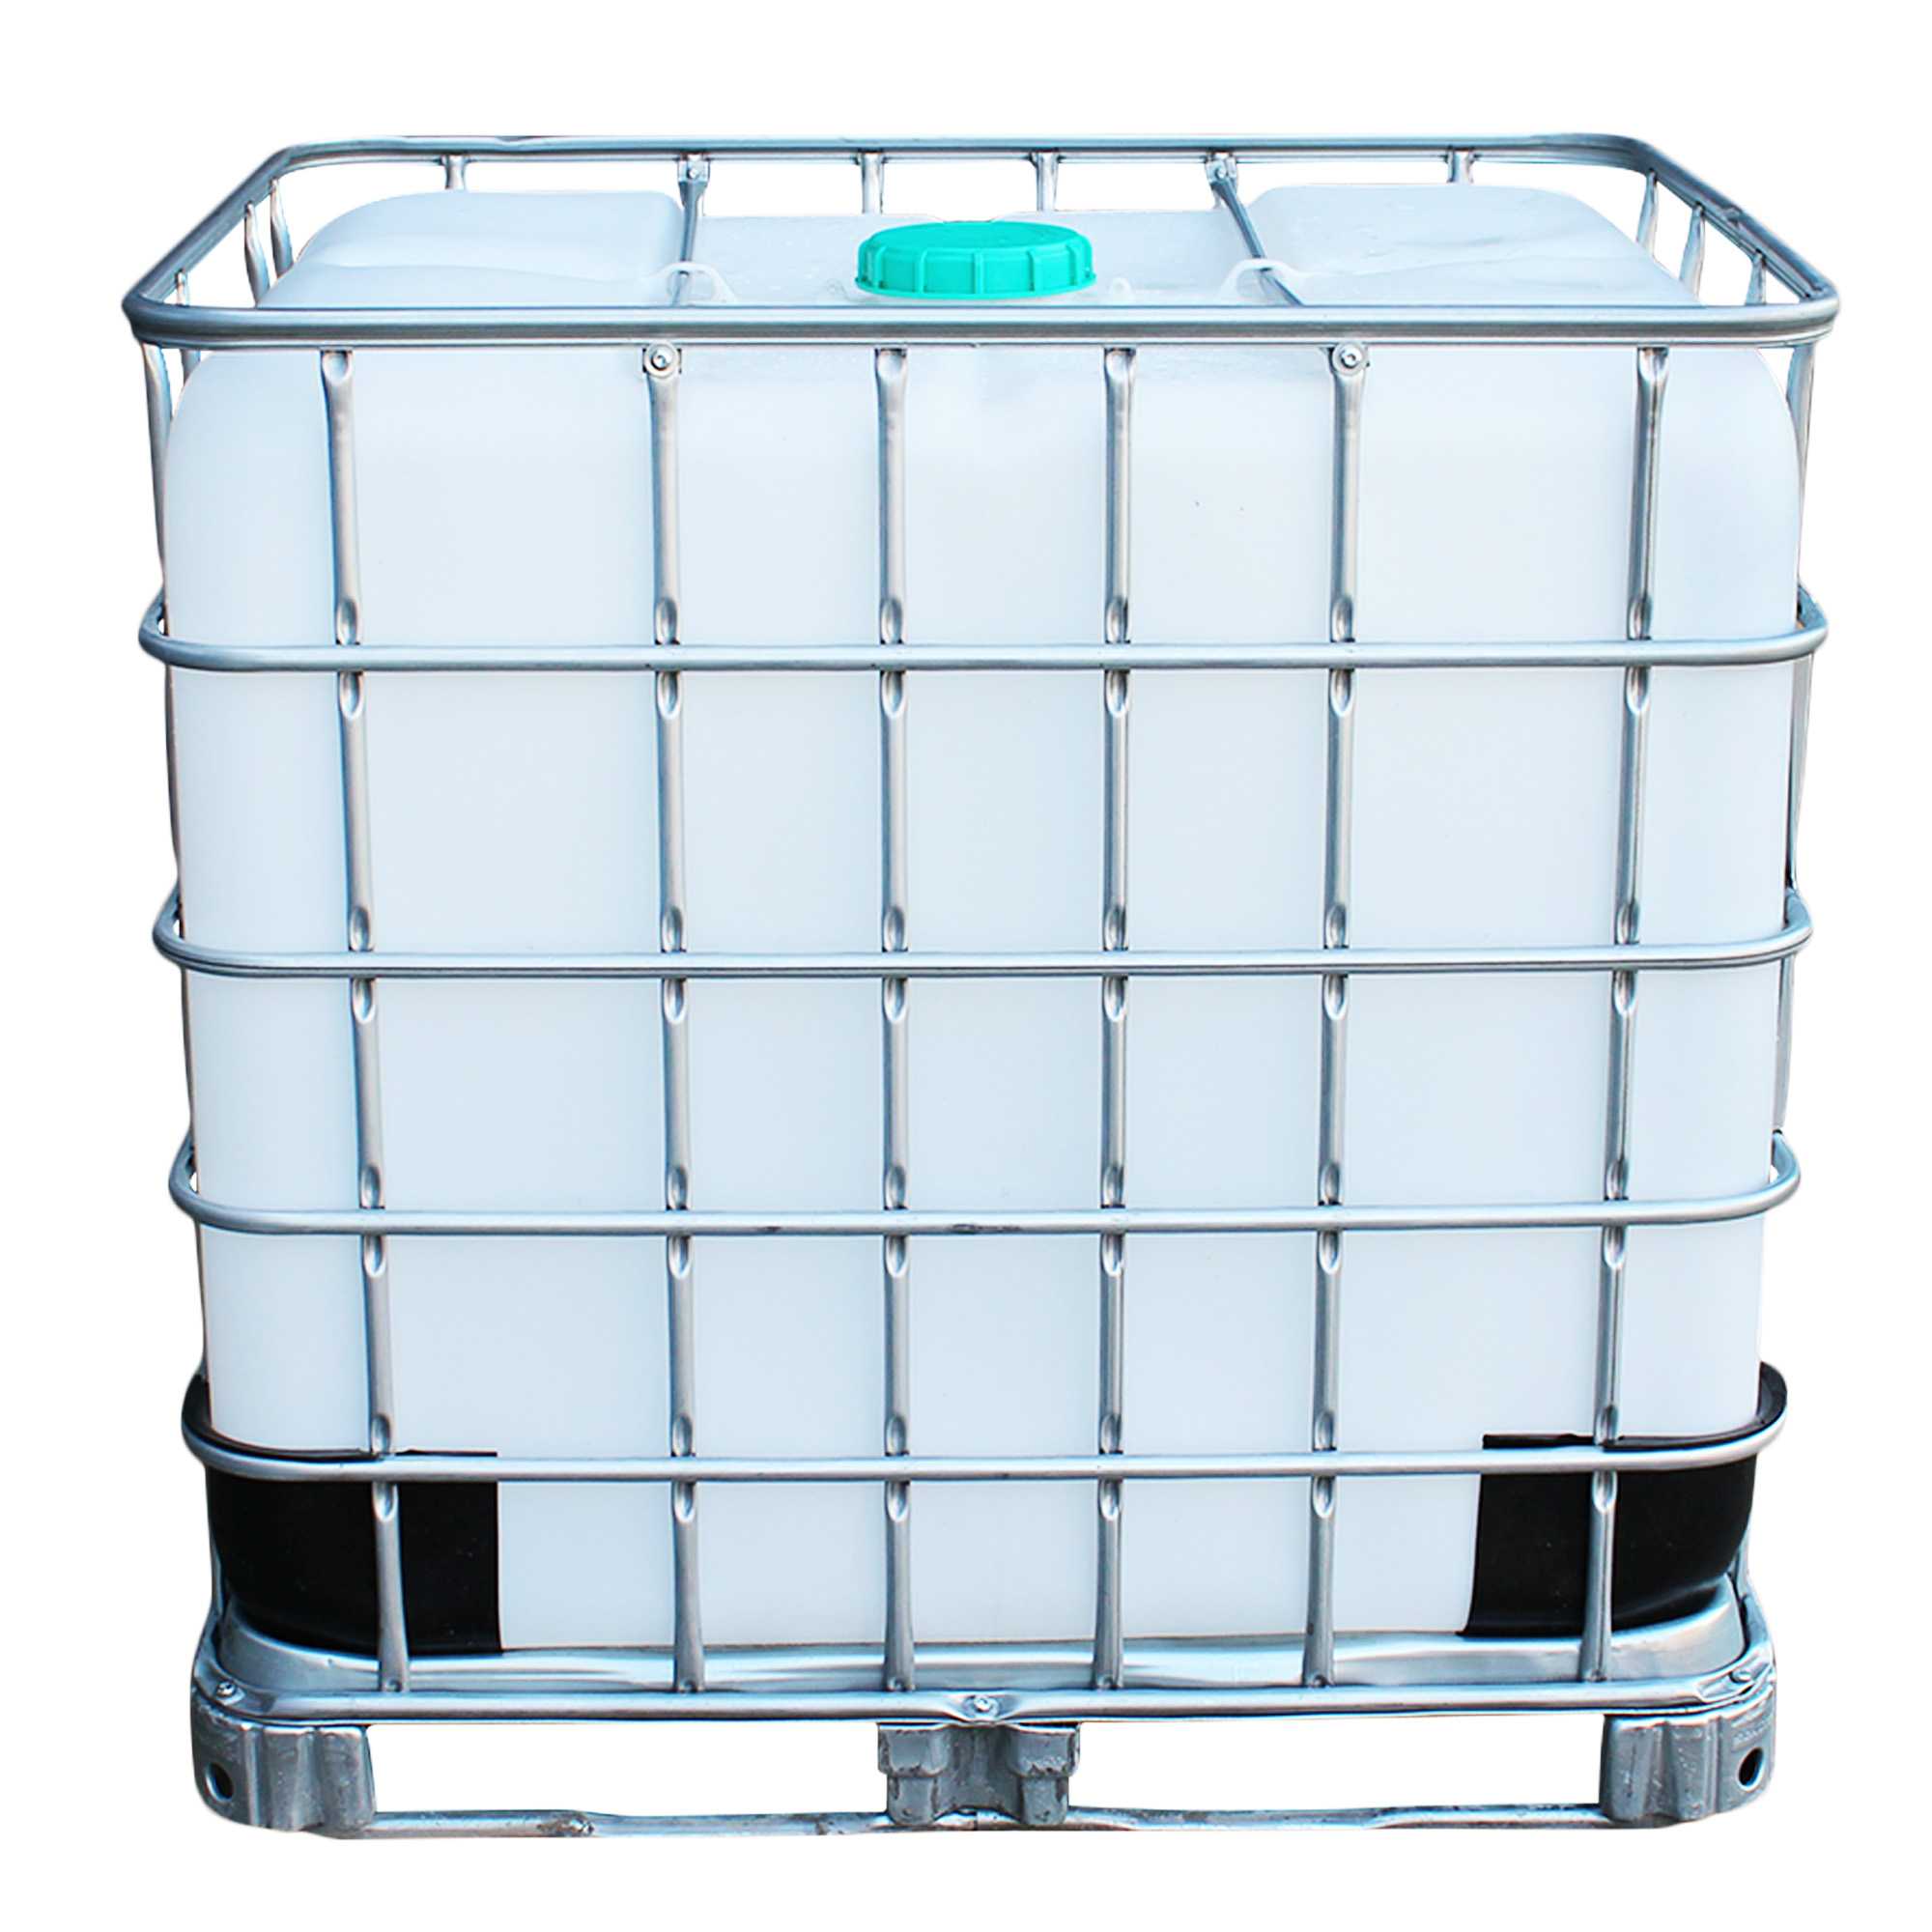 IBC Container 1000l auf Metallpalette -  gebraucht, ungespült, lebensm. Öl